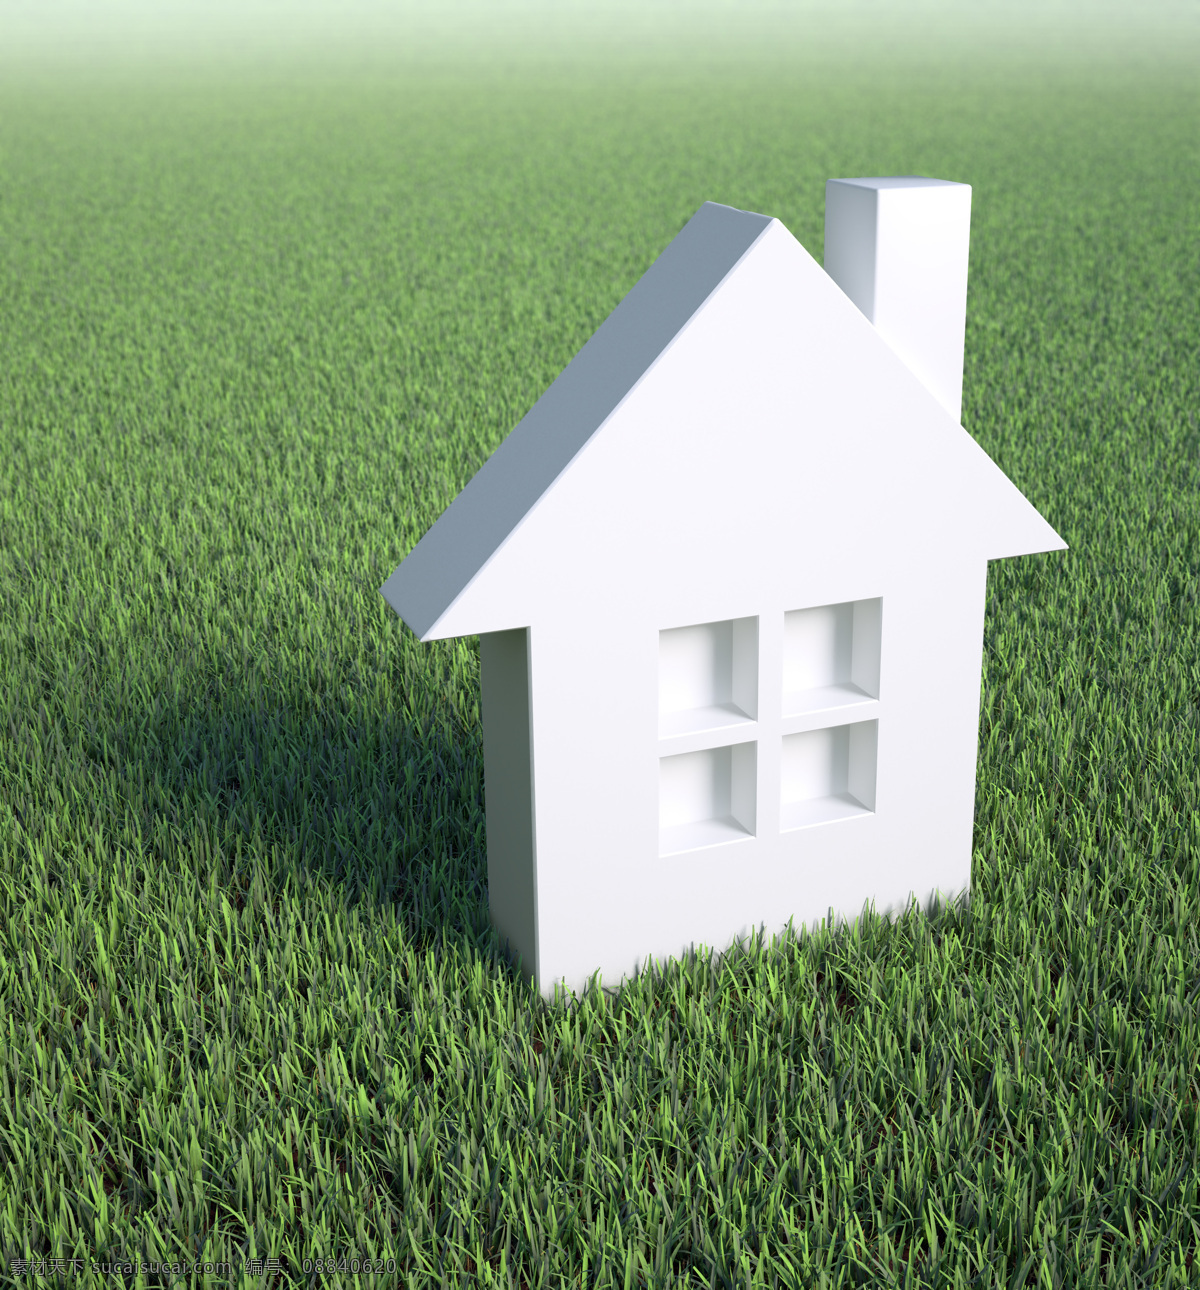 草地 上 房子 房子模型 白色模型 草坪 天空 山水风景 风景图片